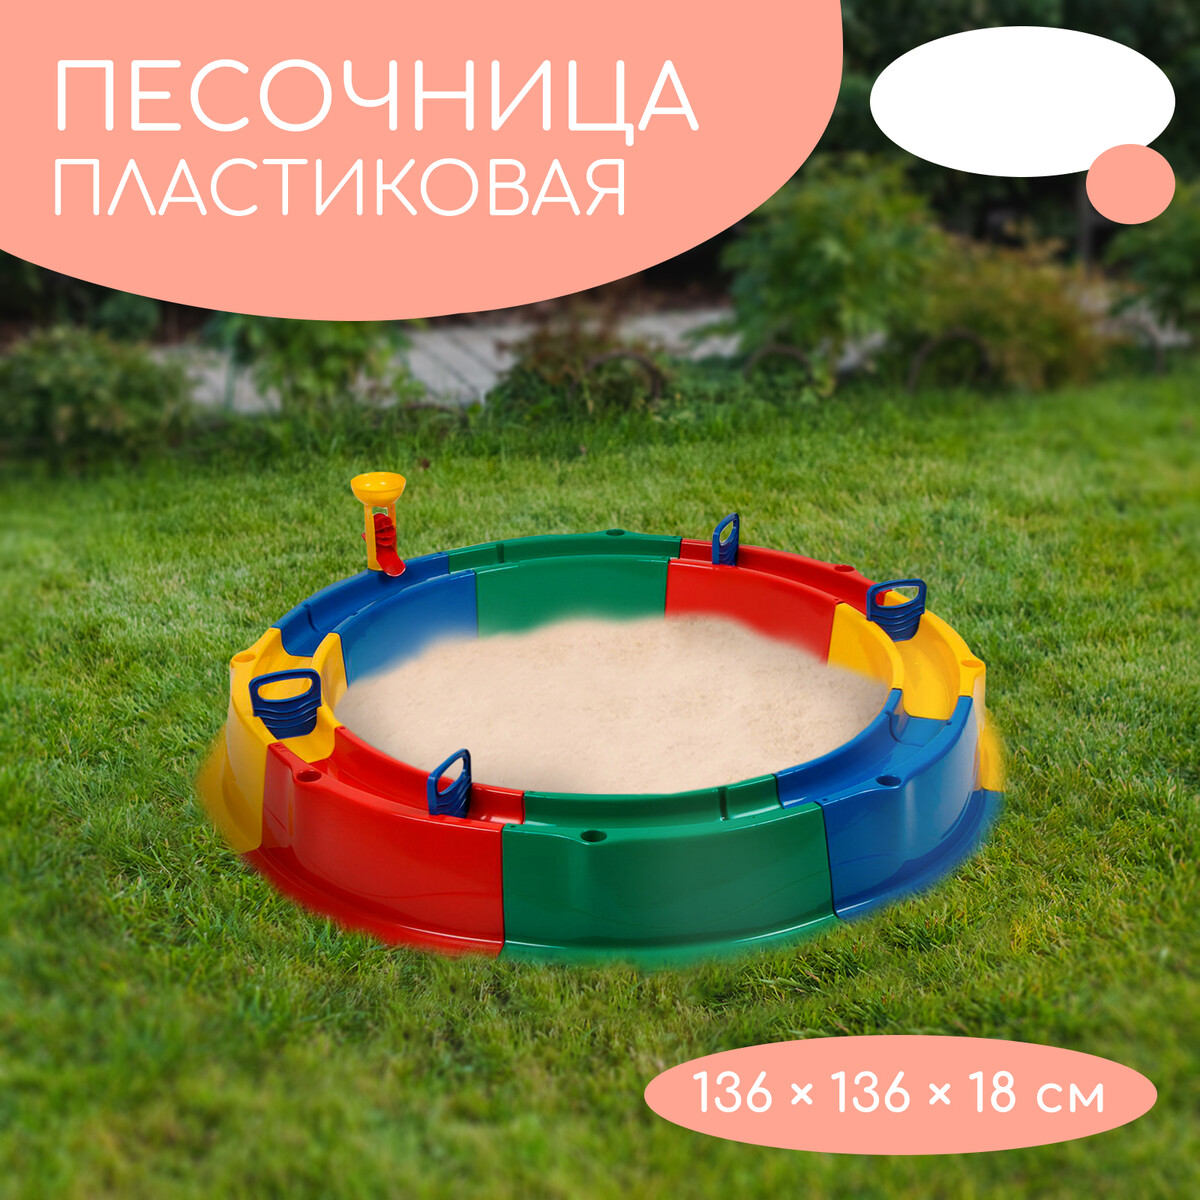 Песочница детская пластиковая, 136 × 136 × 18 см, с набором для игр,